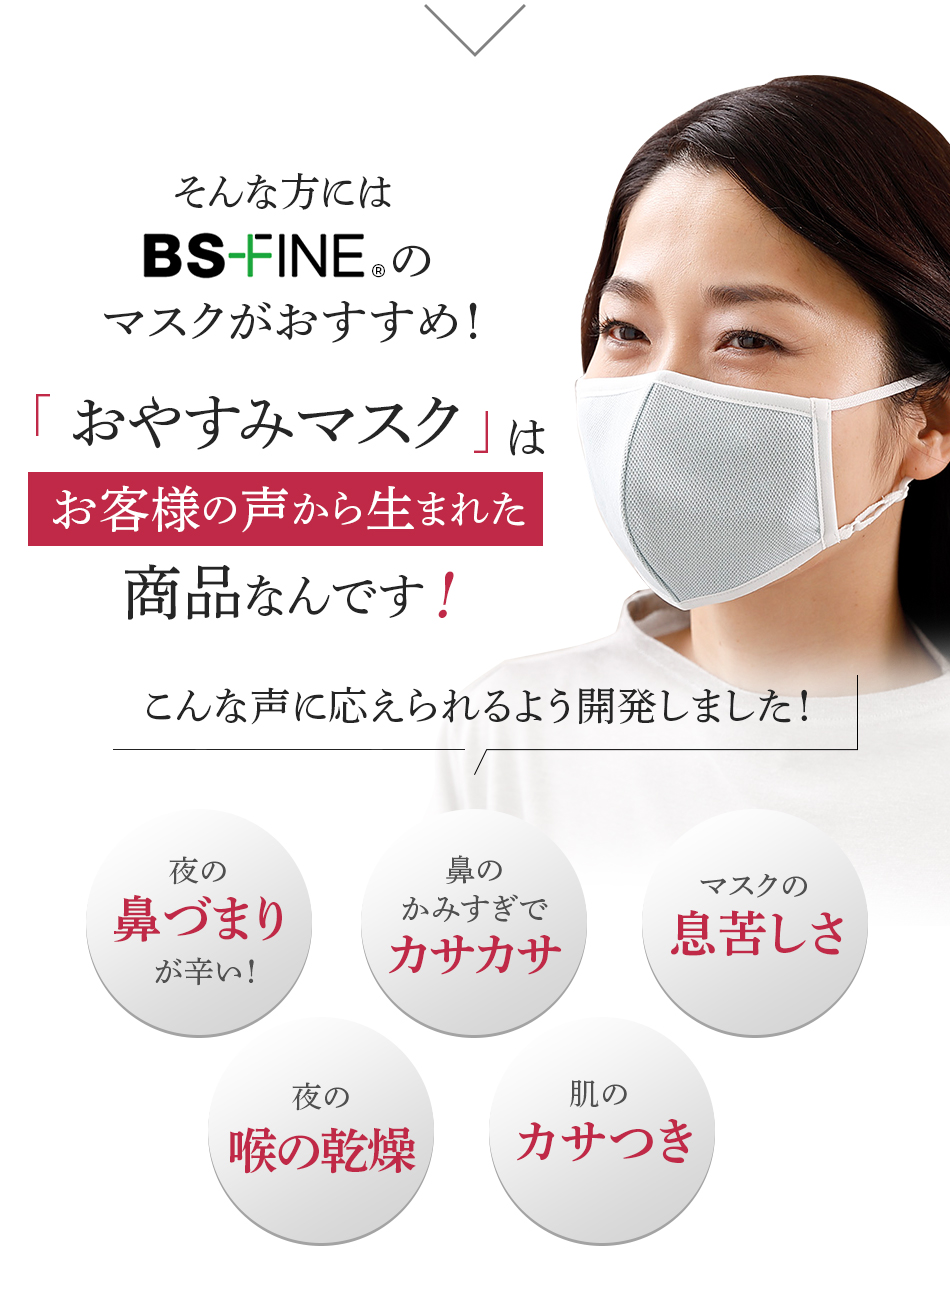 そんな方にはBS-FINEのマスクがおすすめ!おやすみマスクはお客様の声から生まれた商品なんです!